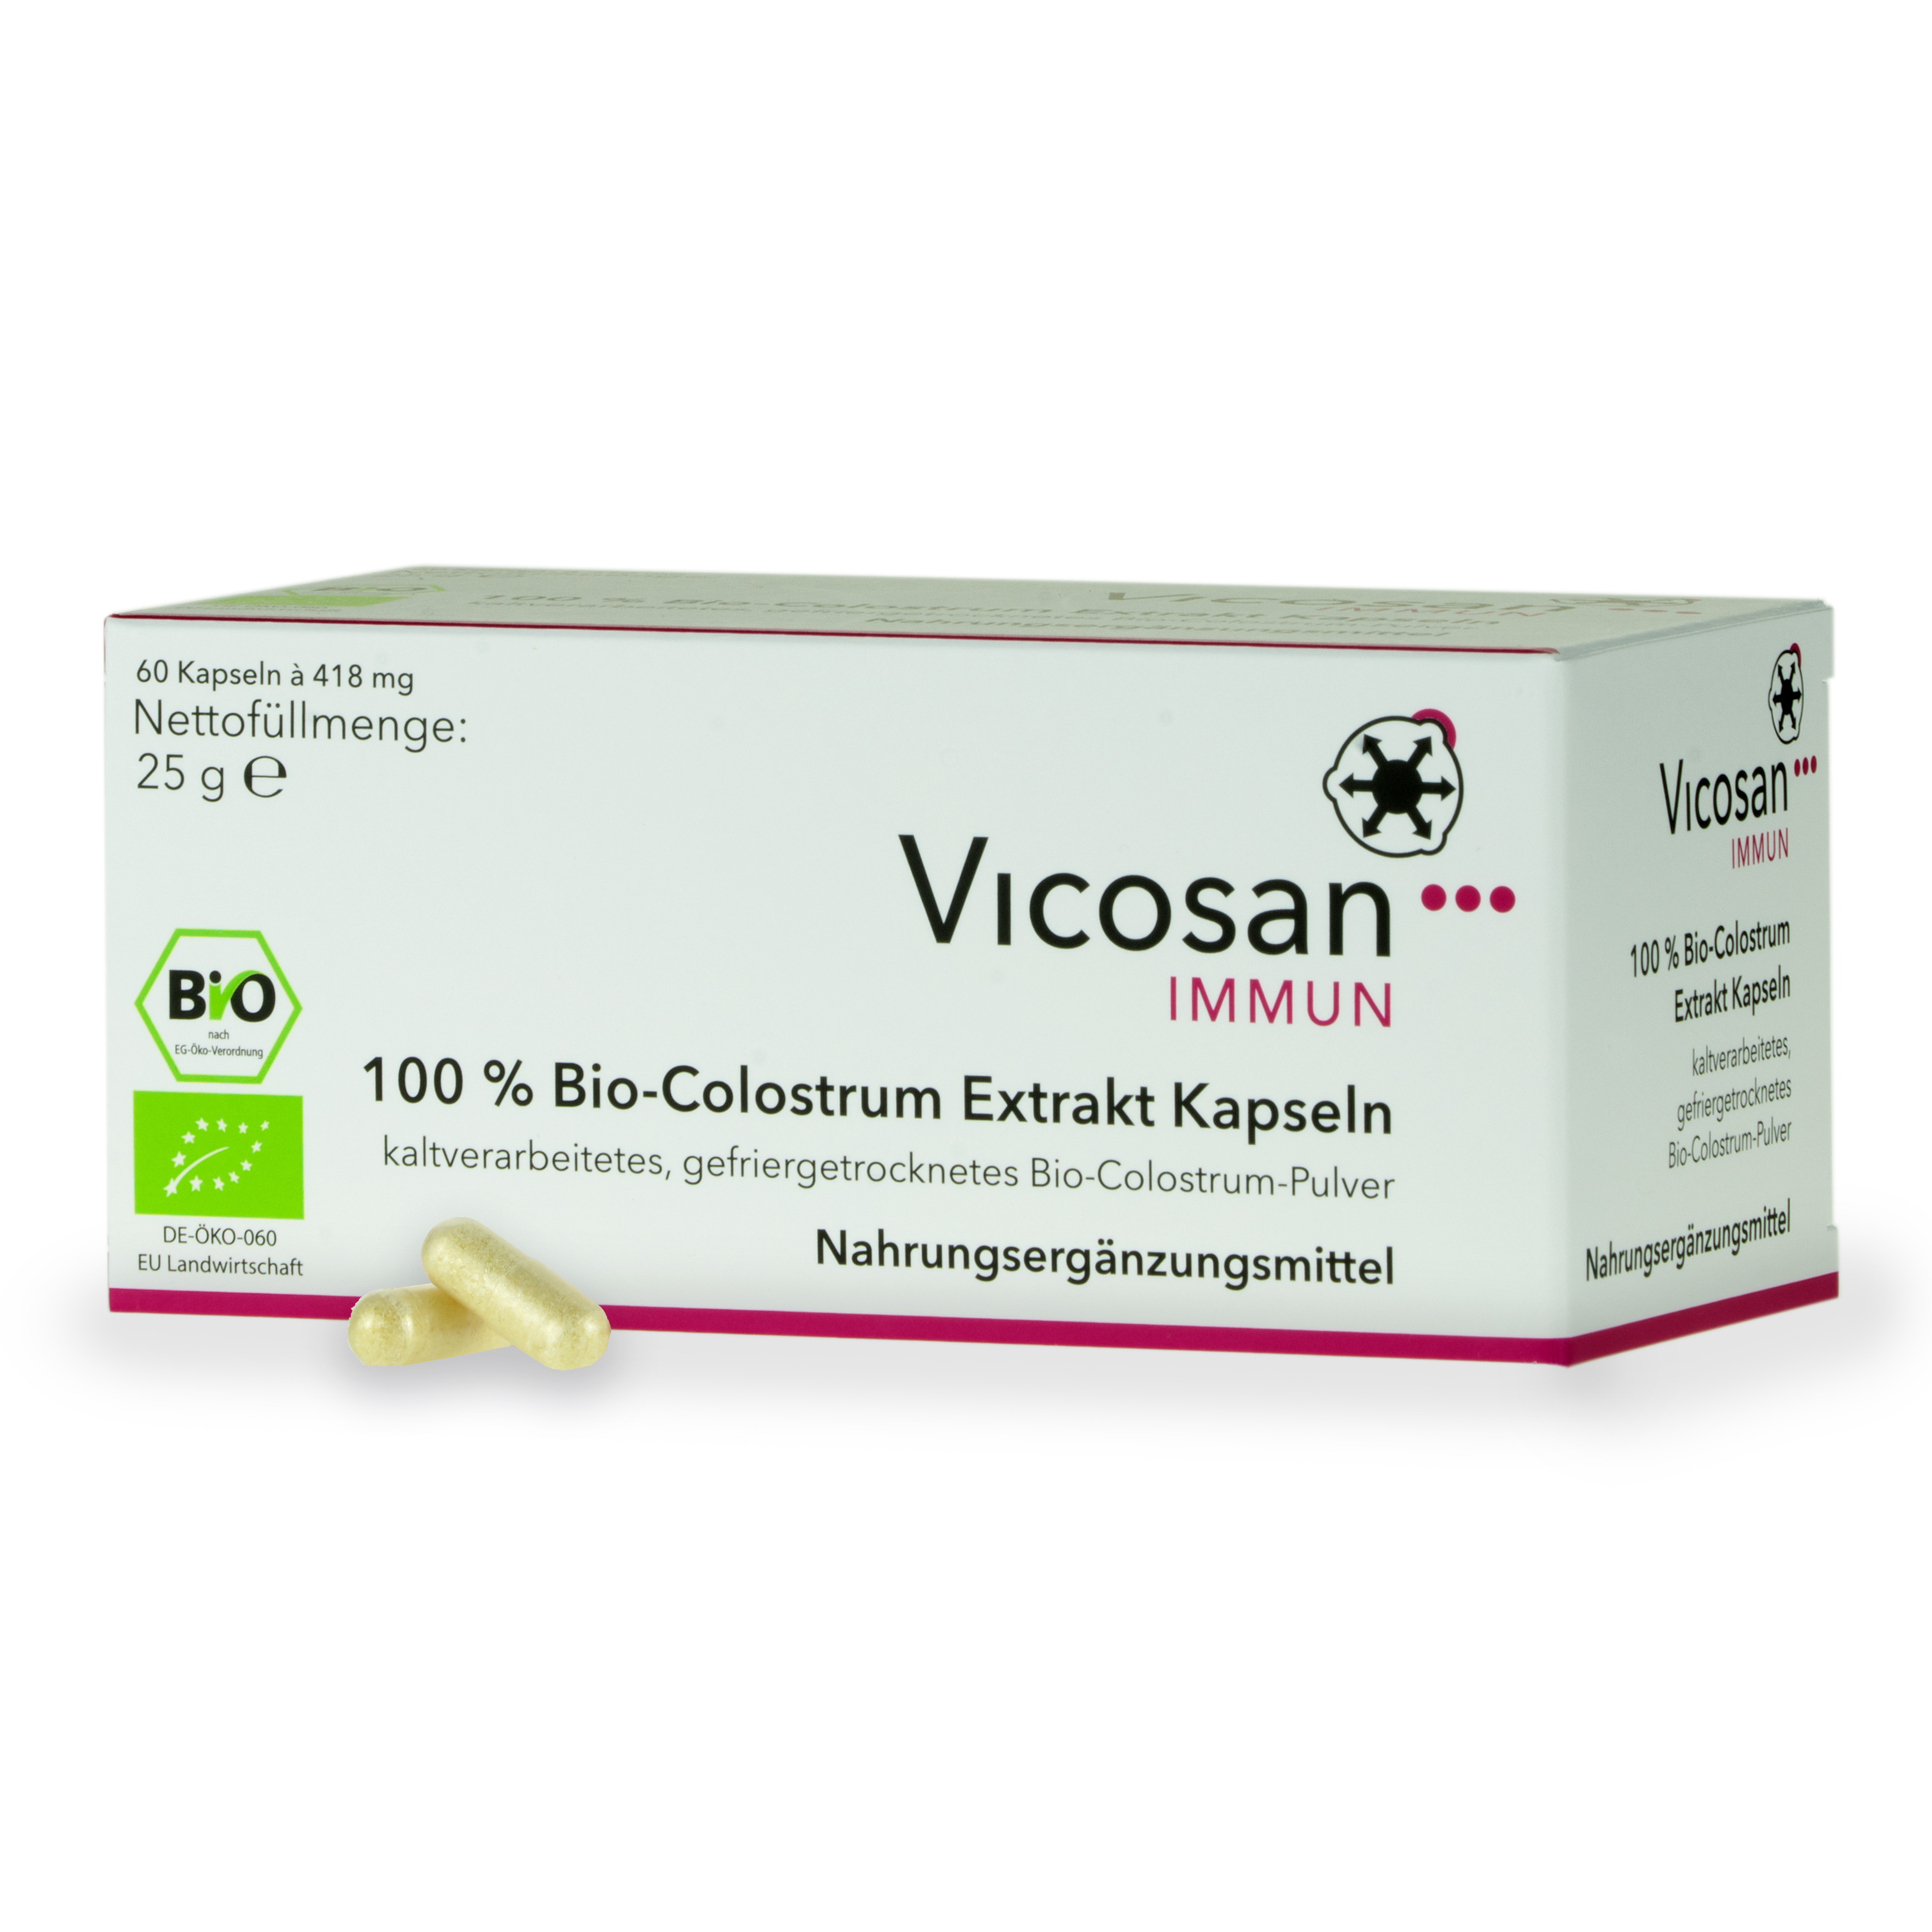 BIO 100 % - Colostrum Immun  VICOSAN